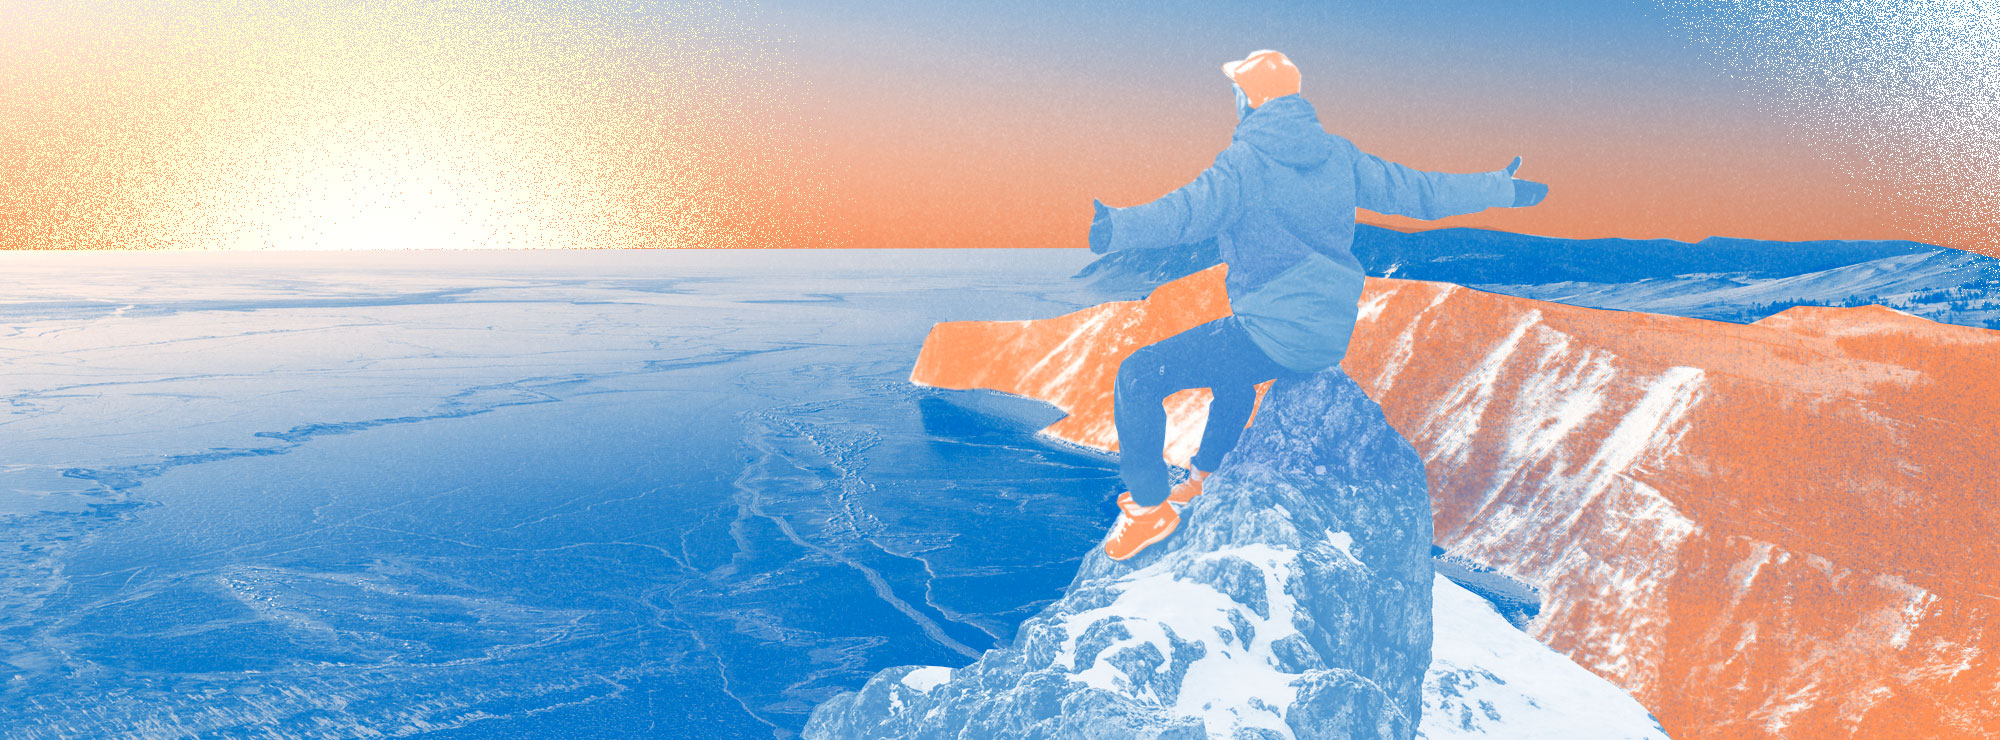 Полноразмерная обложка поста на тему: Что посмотреть на Байкале зимой